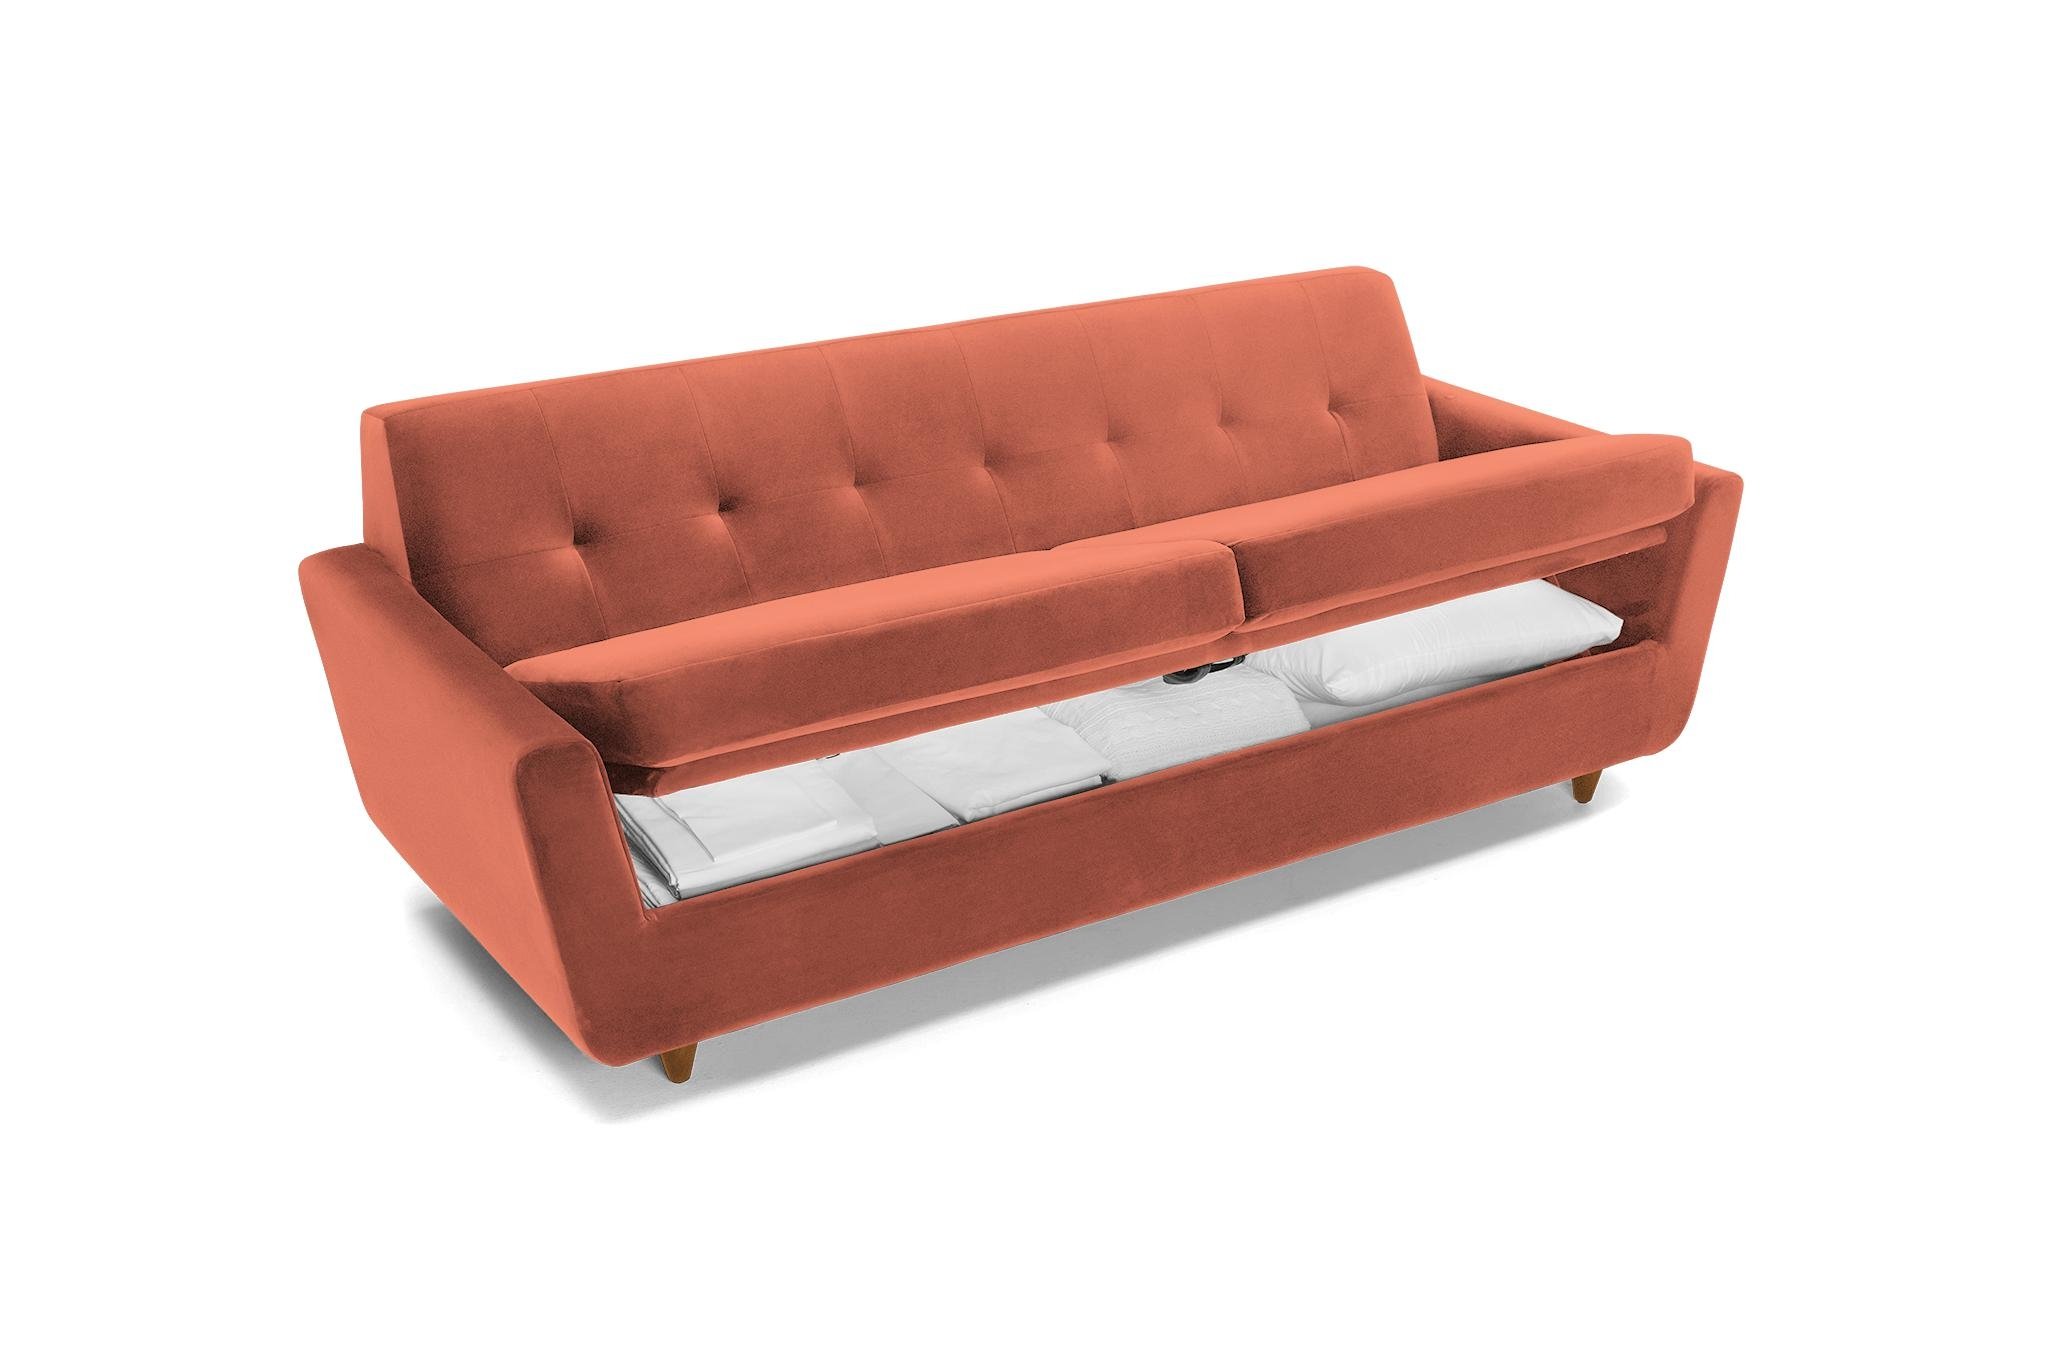 Orange Hughes Mid Century Modern Sofa with Storage - Key Largo Coral - Mocha - Image 3